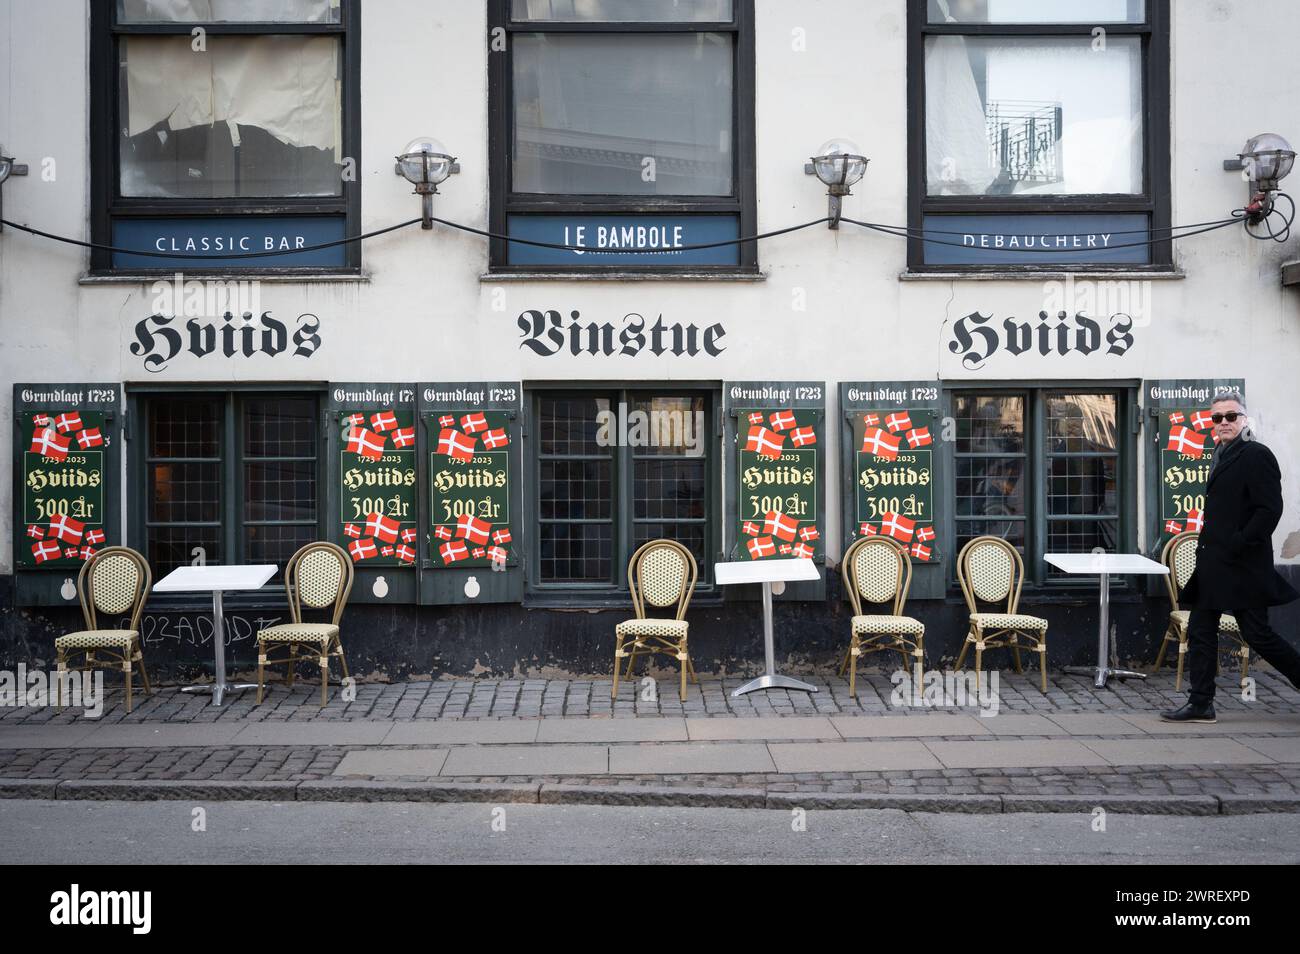 Hviids Vinstue, un popolare pub vecchio di 300 anni a Kongens Nytorv a Copenaghen, Danimarca, con bandiere danesi all'aperto Foto Stock